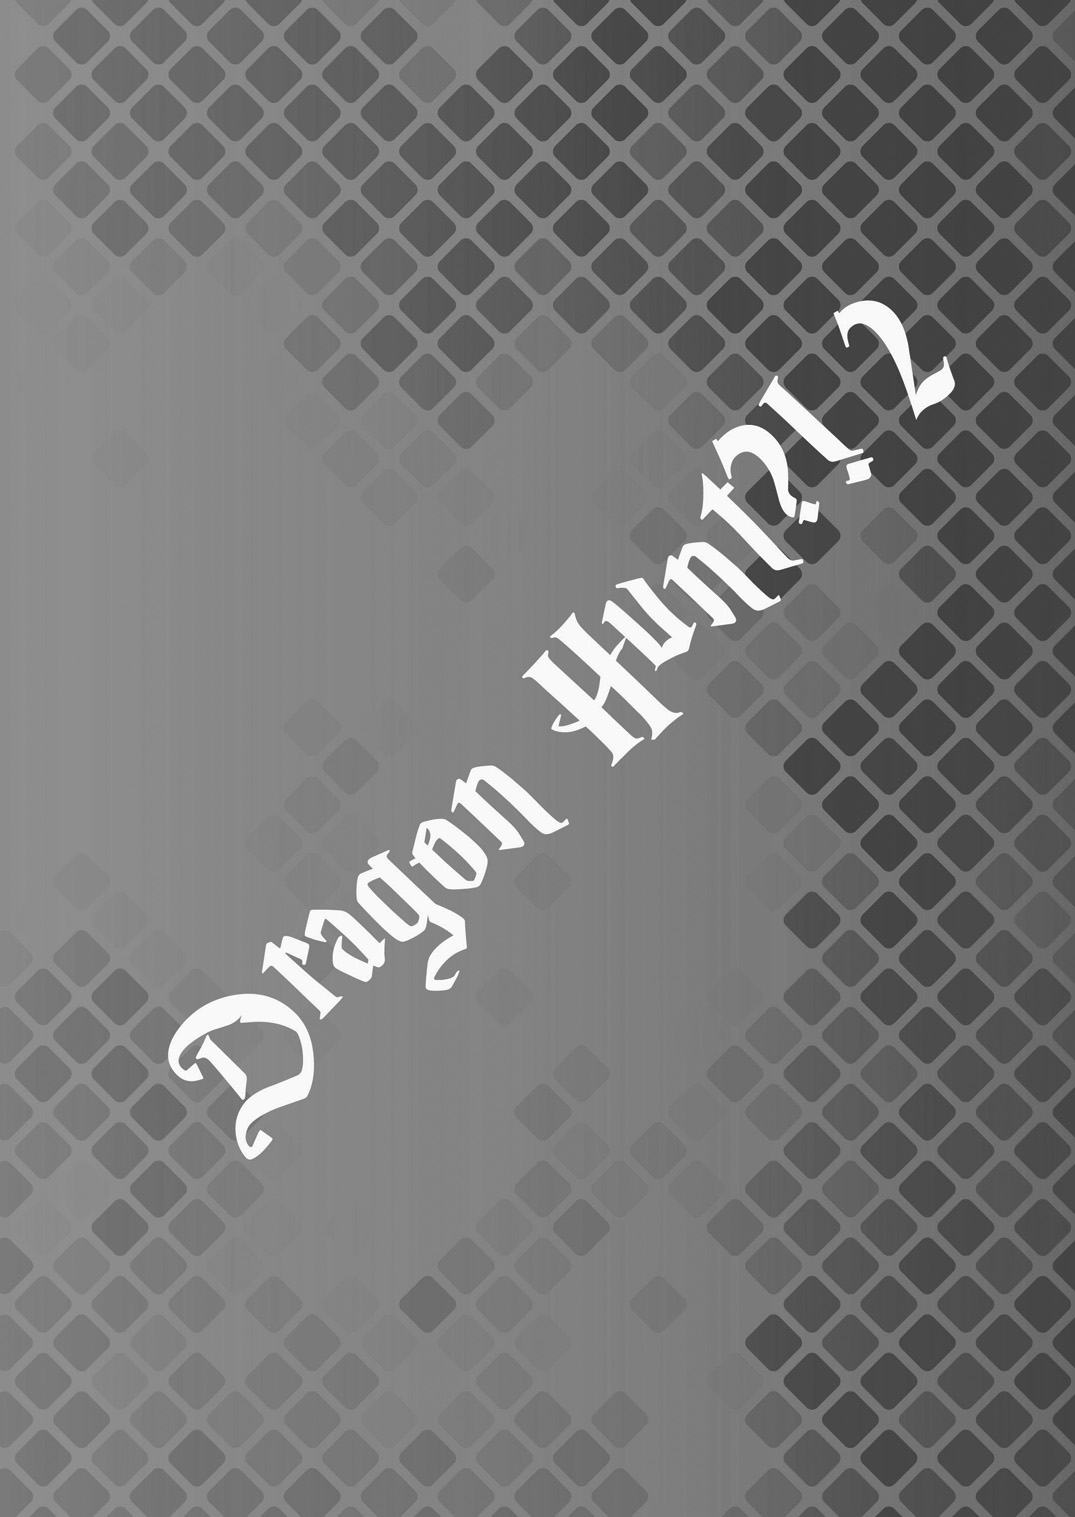 (C84) [アタマヌルイMIX-eR (アユキサ)] Dragon Hunt?! 2